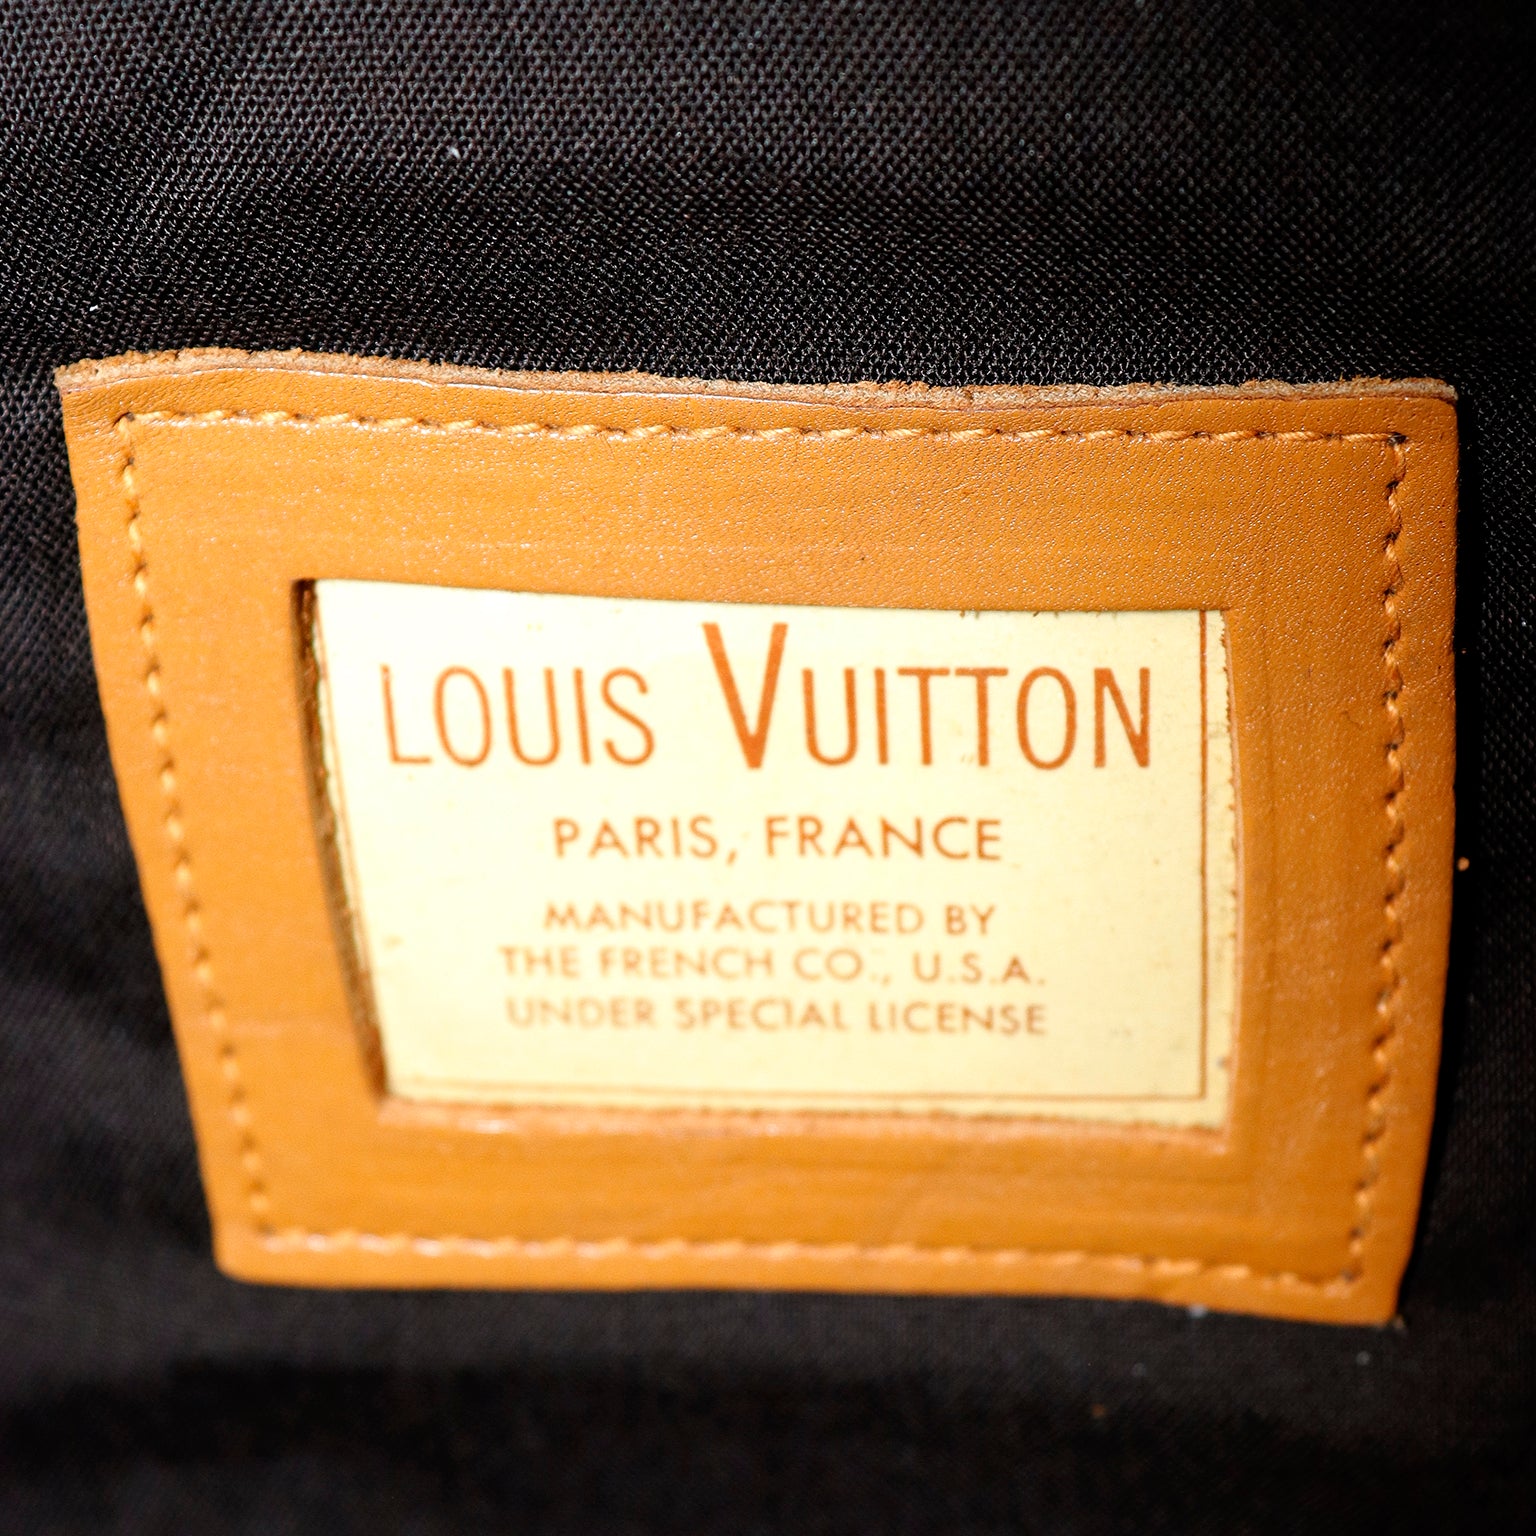 80s Vintage LOUIS VUITTON Bag Light Pink Leather Bag -  Sweden